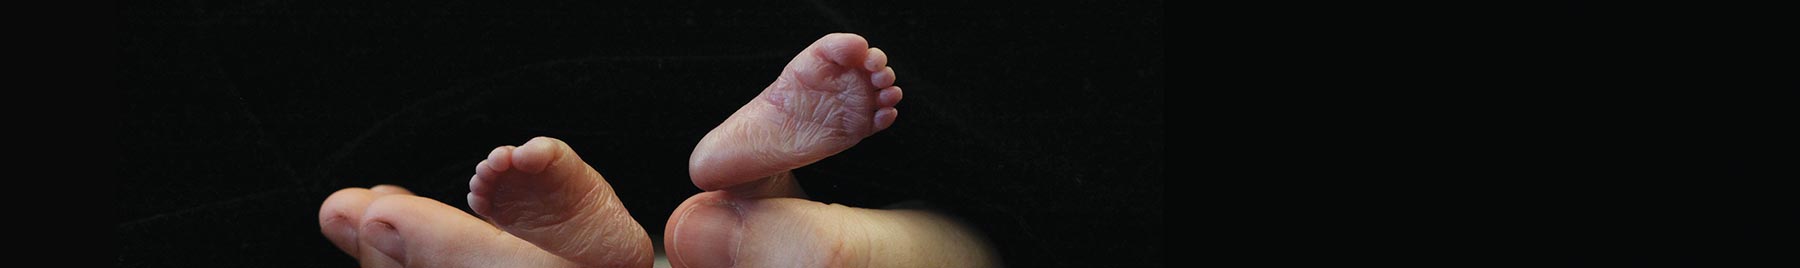 hands holding a babys feet